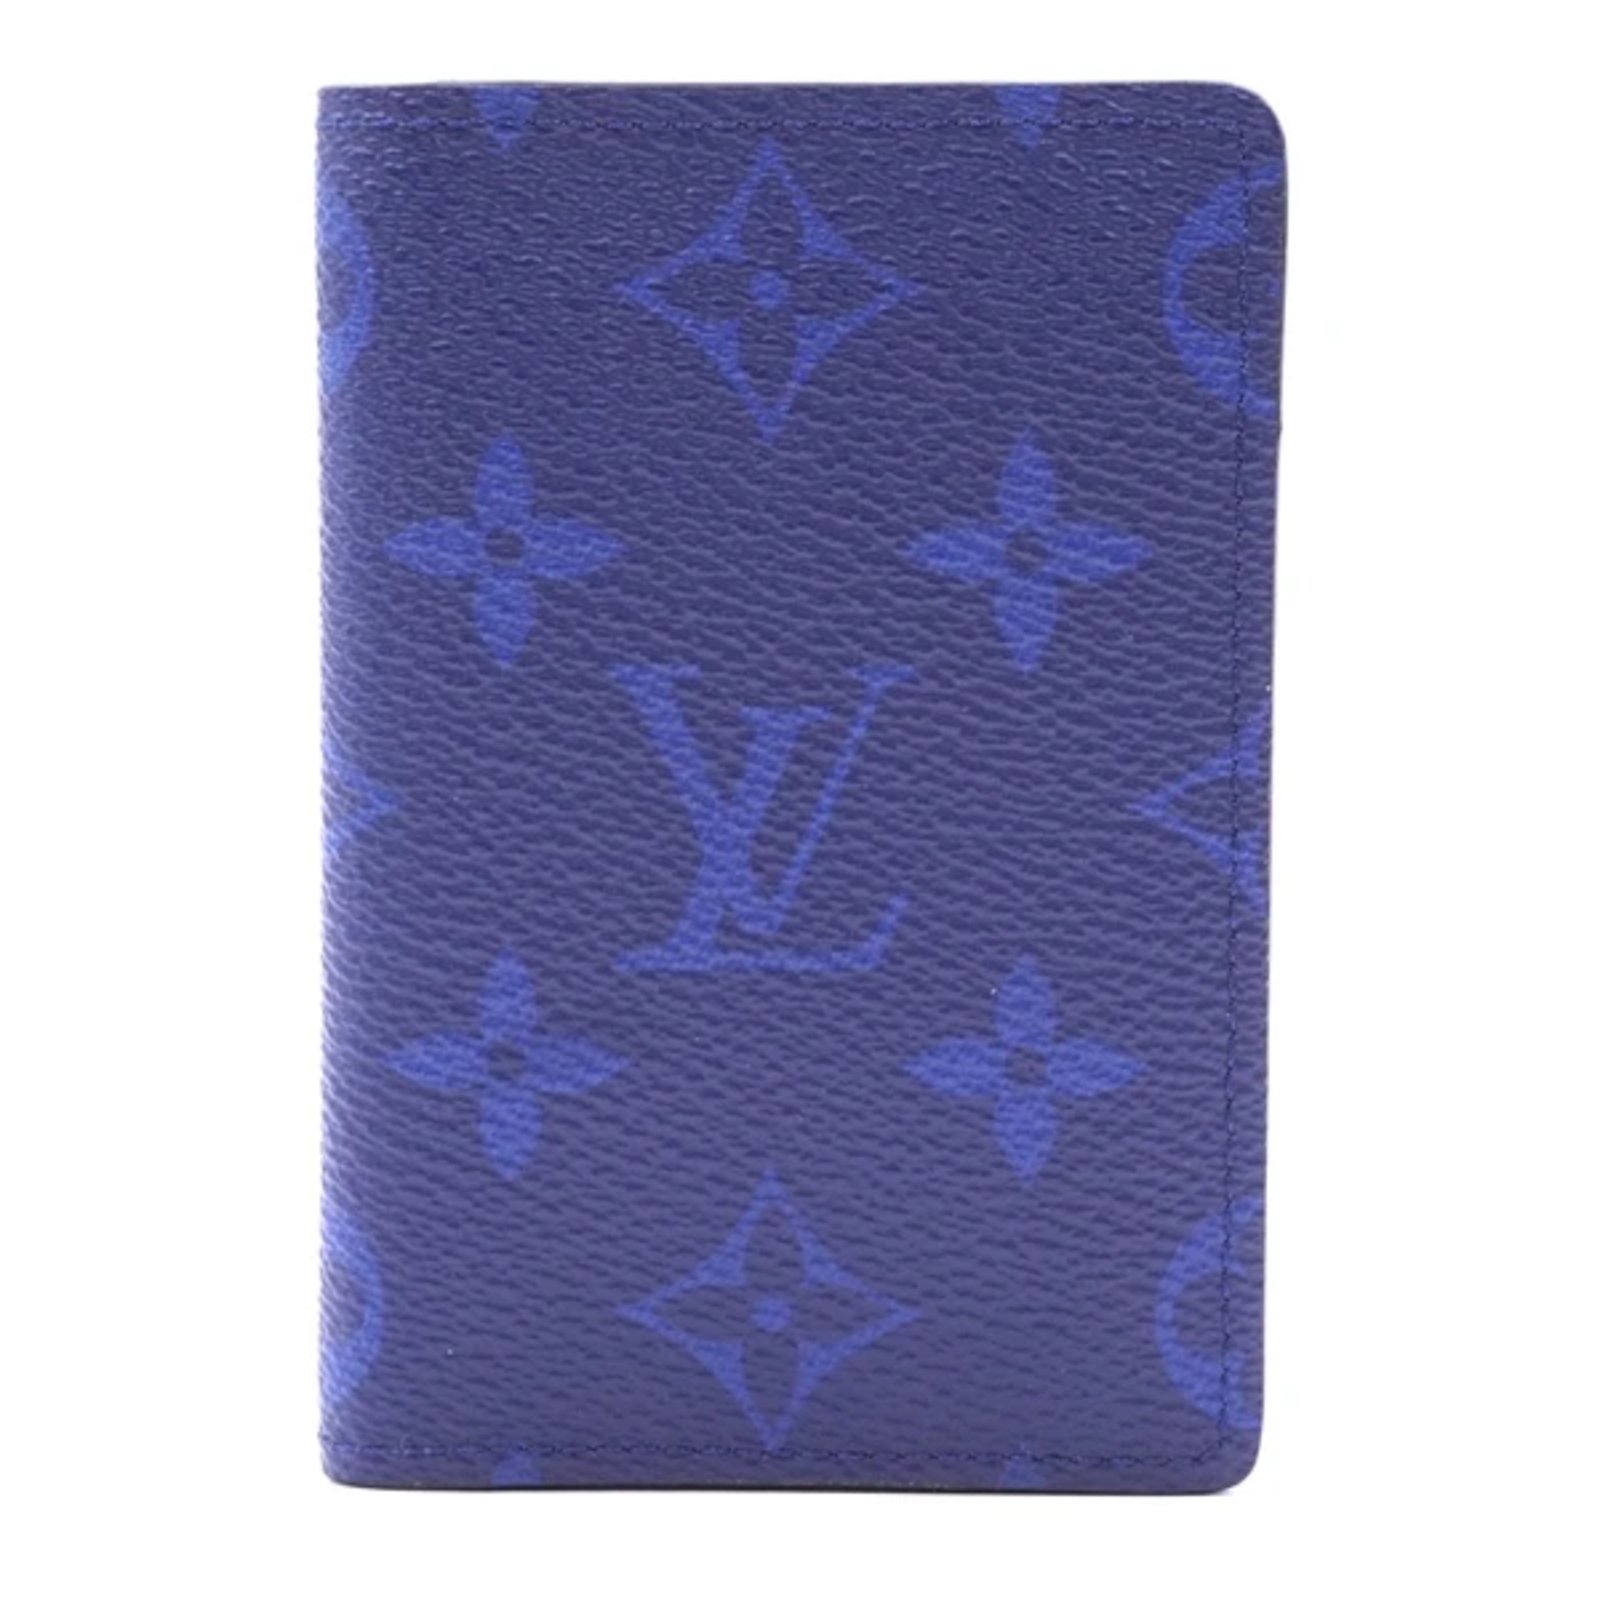 Lv Blue Monogram Wallet - Foto Kolekcija